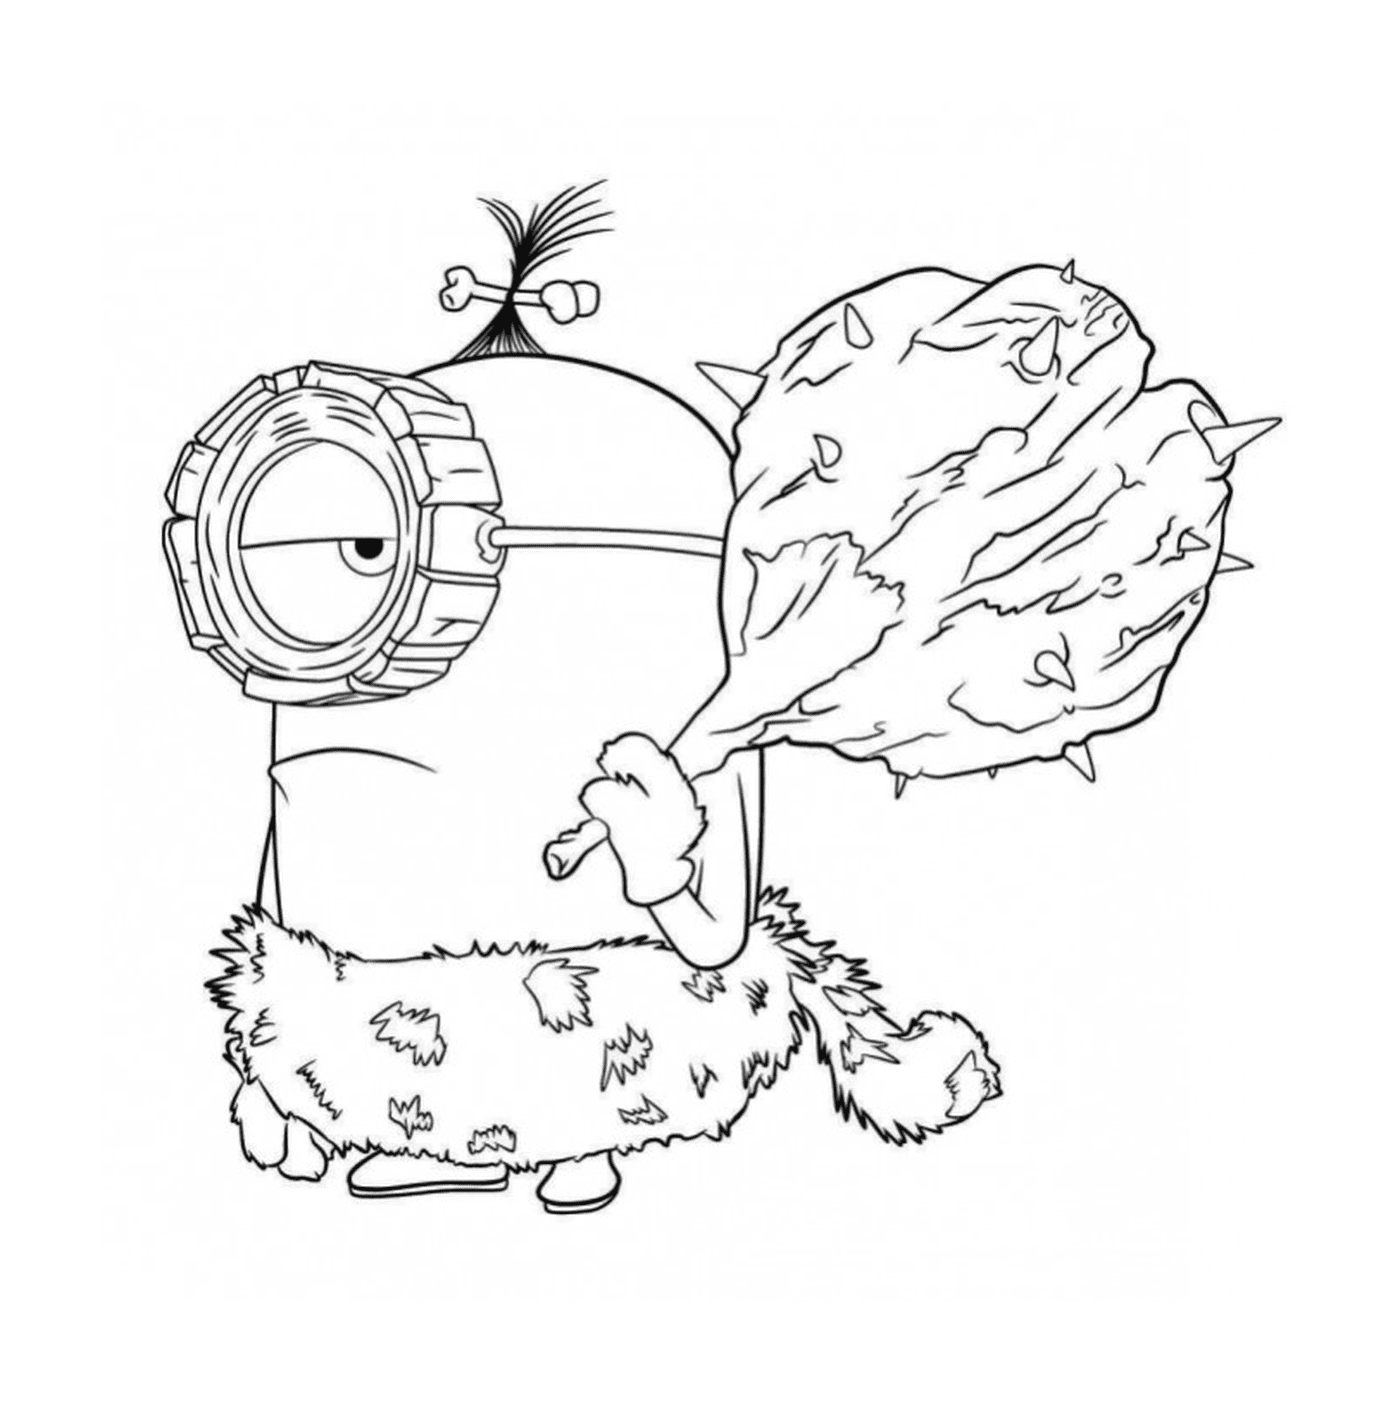  Minion preistorico 2, personaggio animato 